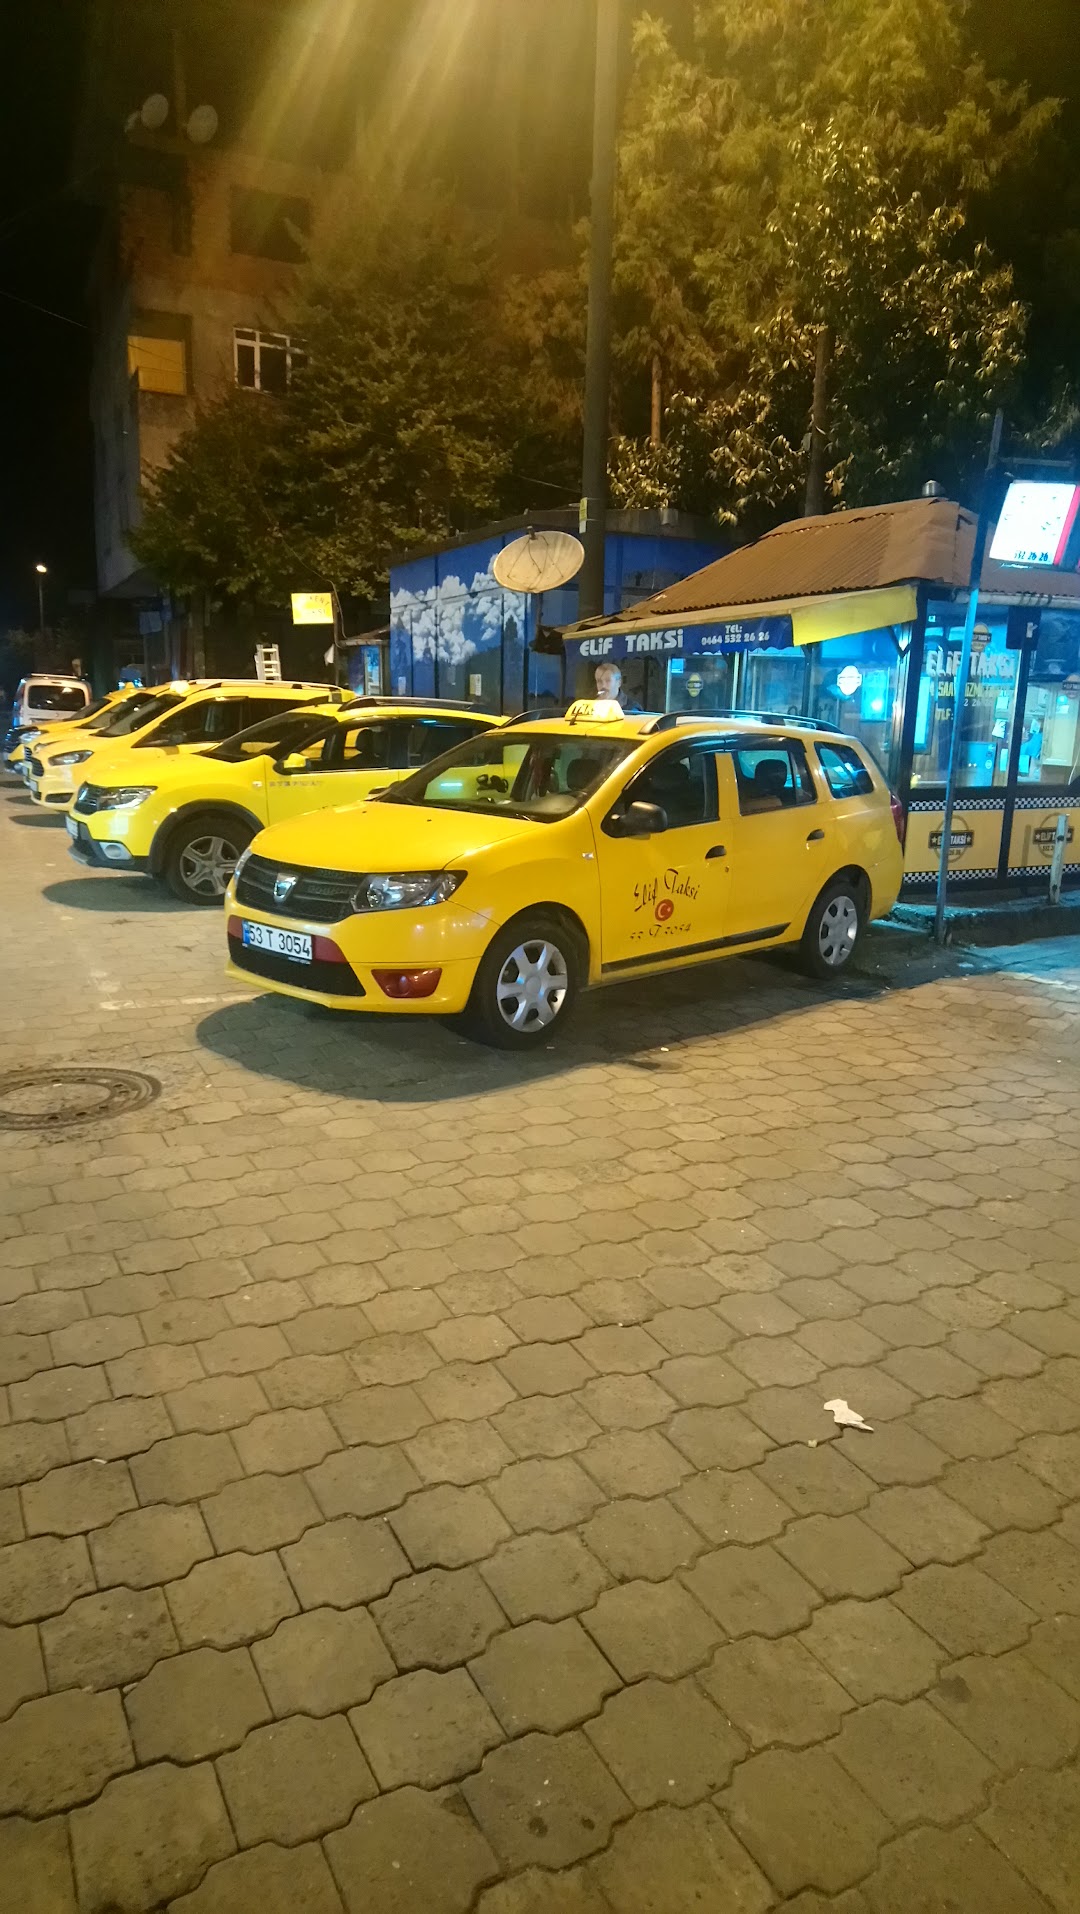 Elif Taksi